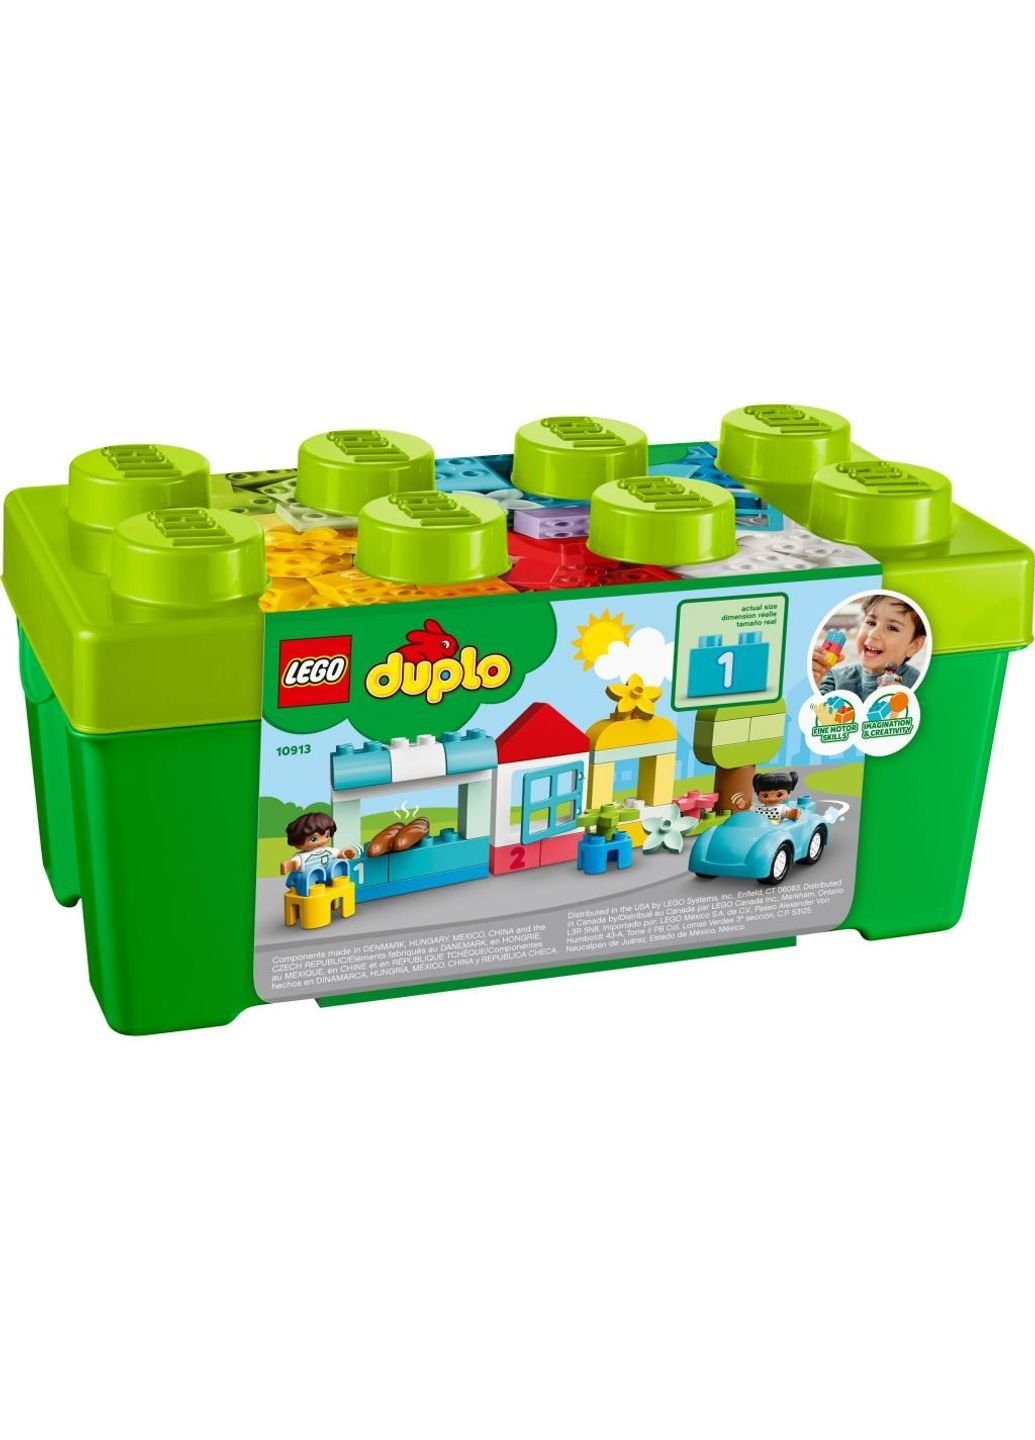 Конструктор (10913) Lego duplo classic коробка с кубиками 65 деталей (249599953)